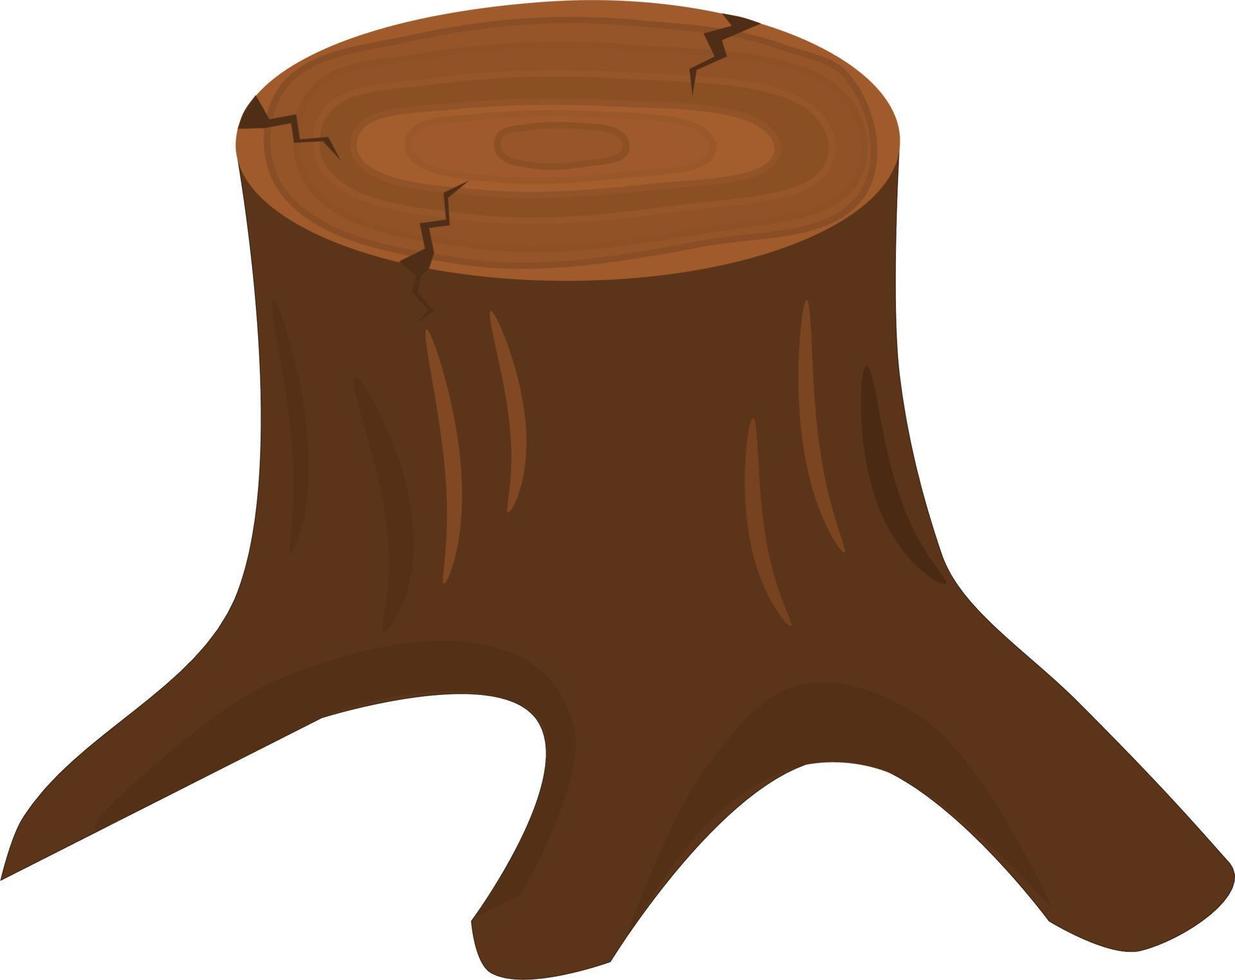 Baum Stumpf. Vektor Illustration.